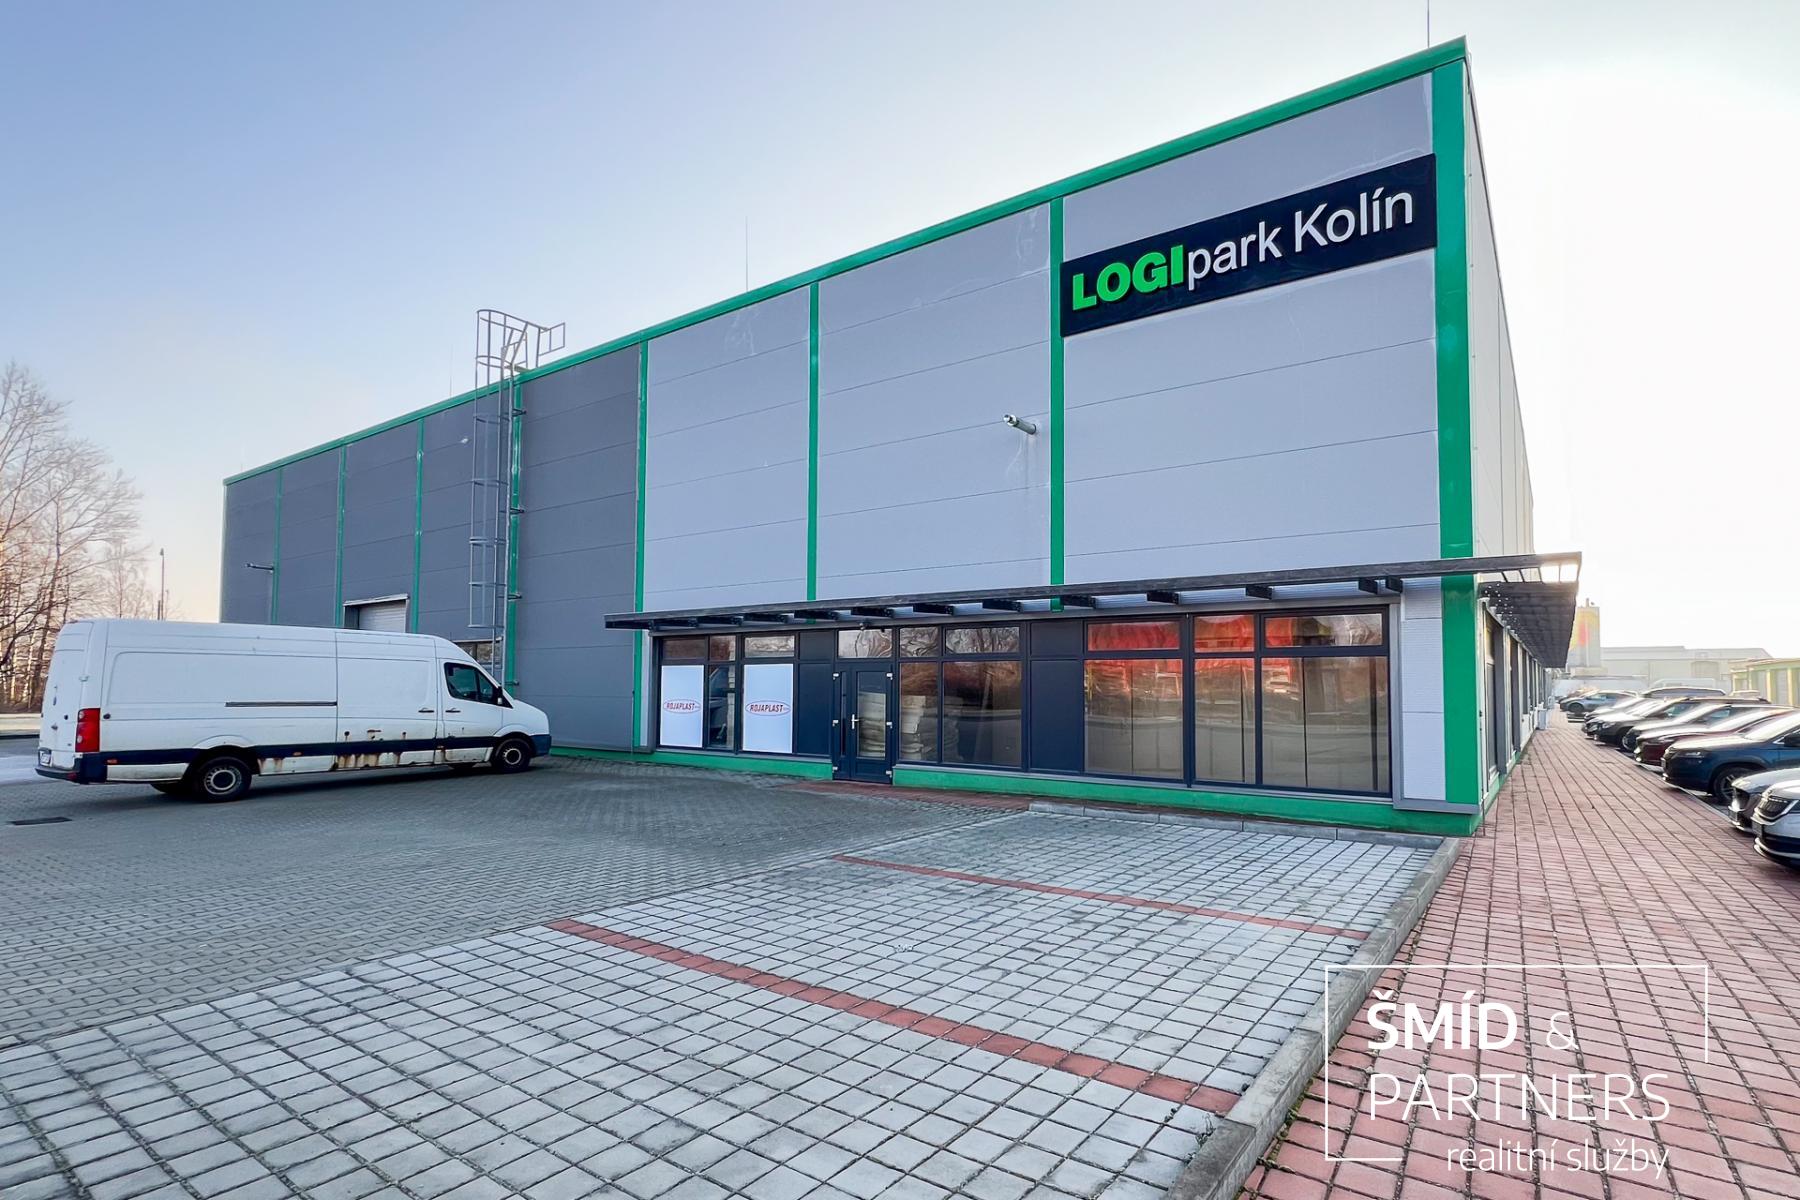 Pronájem komerčních prostor 1205,35 m2 areál Logi Park Kolín.